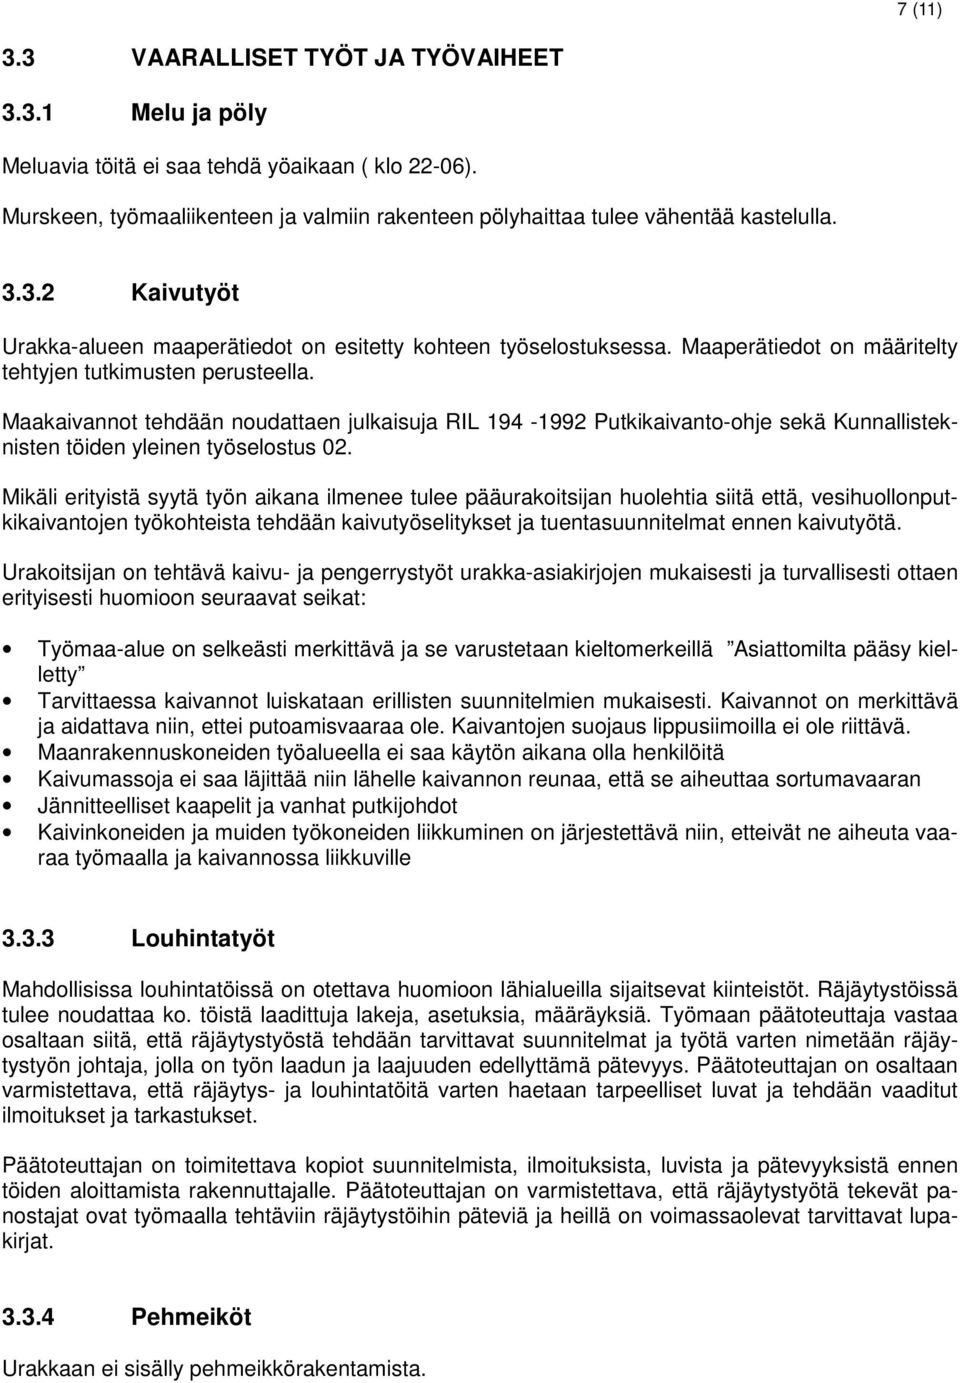 Maakaivannot tehdään noudattaen julkaisuja RIL 194-1992 Putkikaivanto-ohje sekä Kunnallisteknisten töiden yleinen työselostus 02.